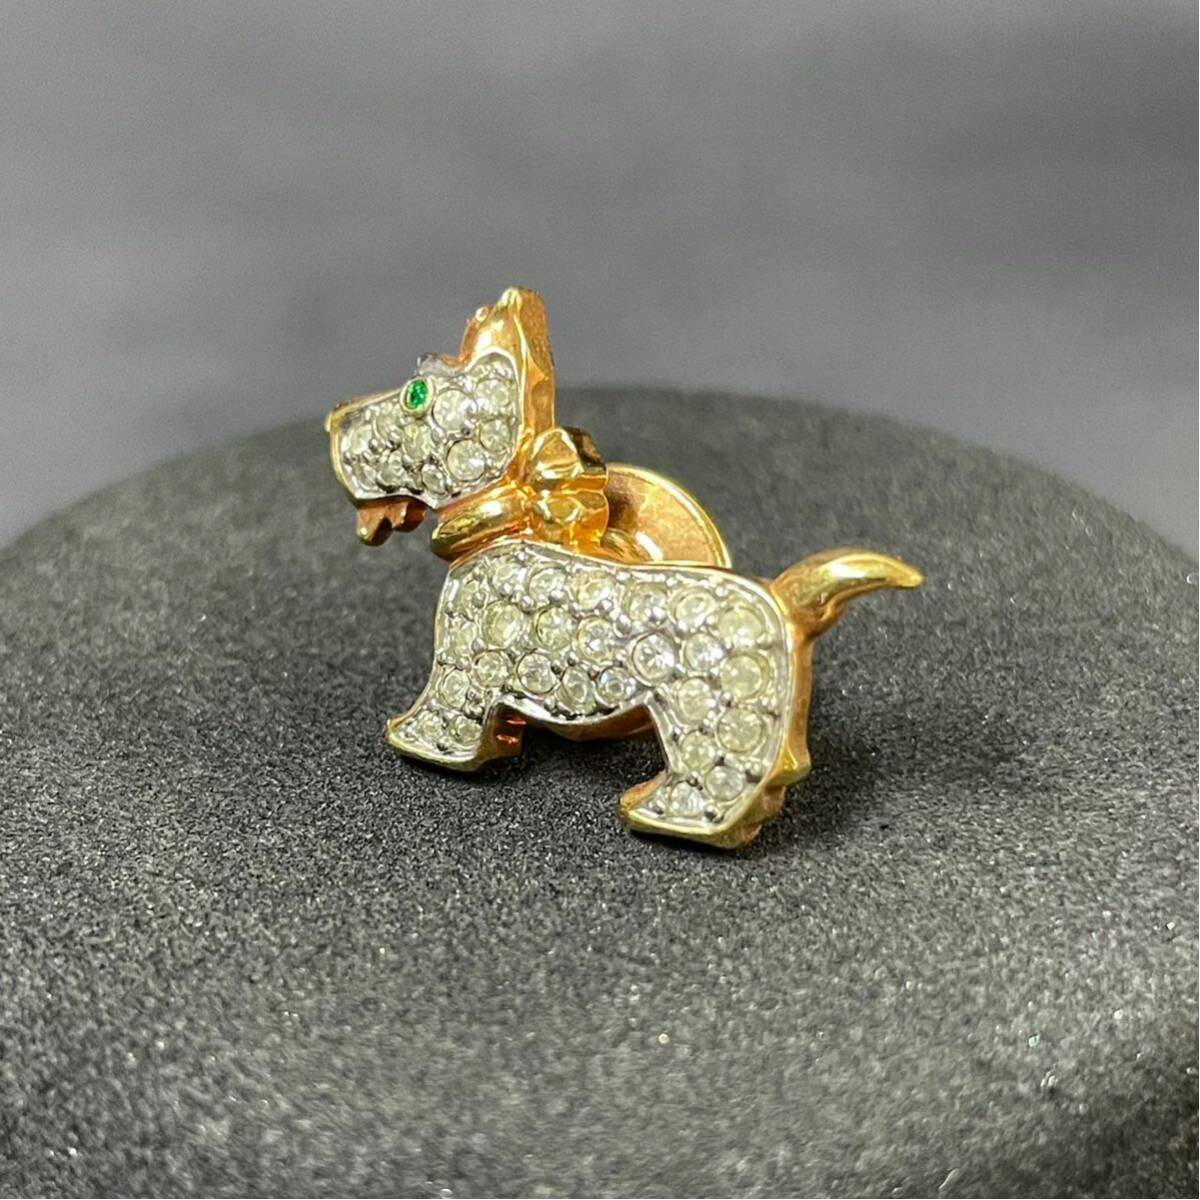 ① SWAROVSKI собака узор булавка брошь Gold цвет crystal Swarovski собака Stone ювелирные изделия аксессуары 